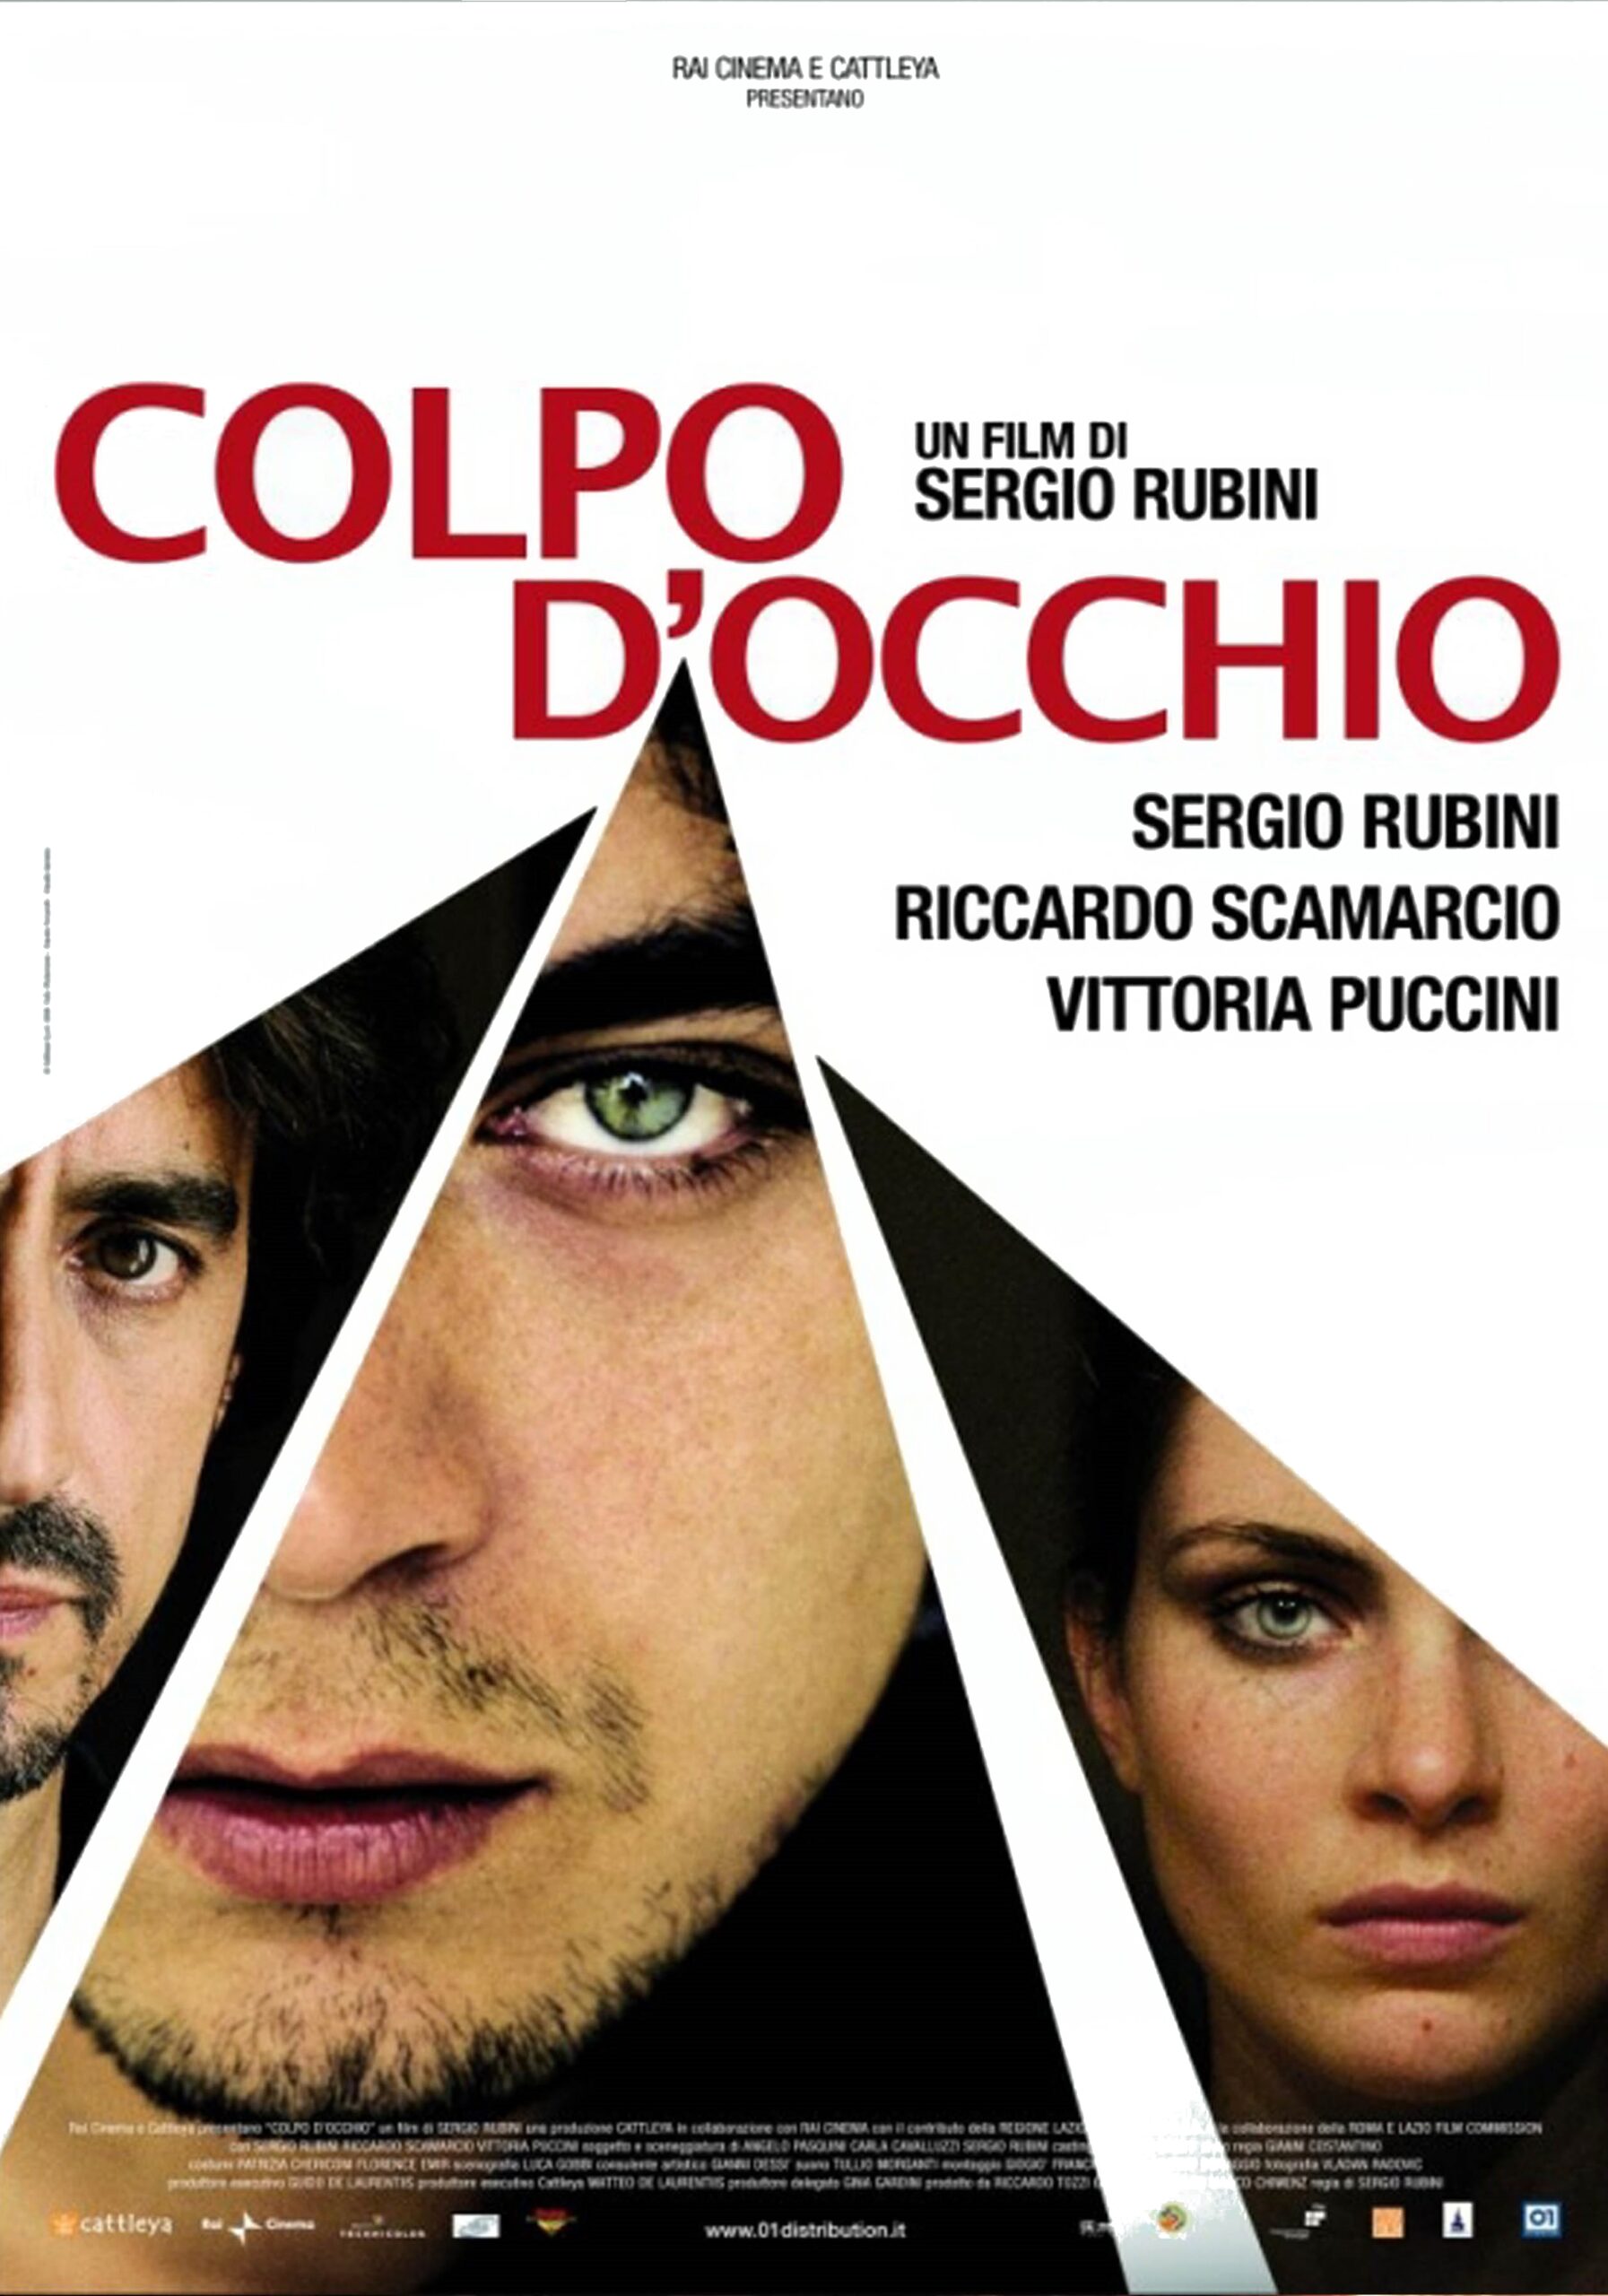 Colpo d’occhio (2008)